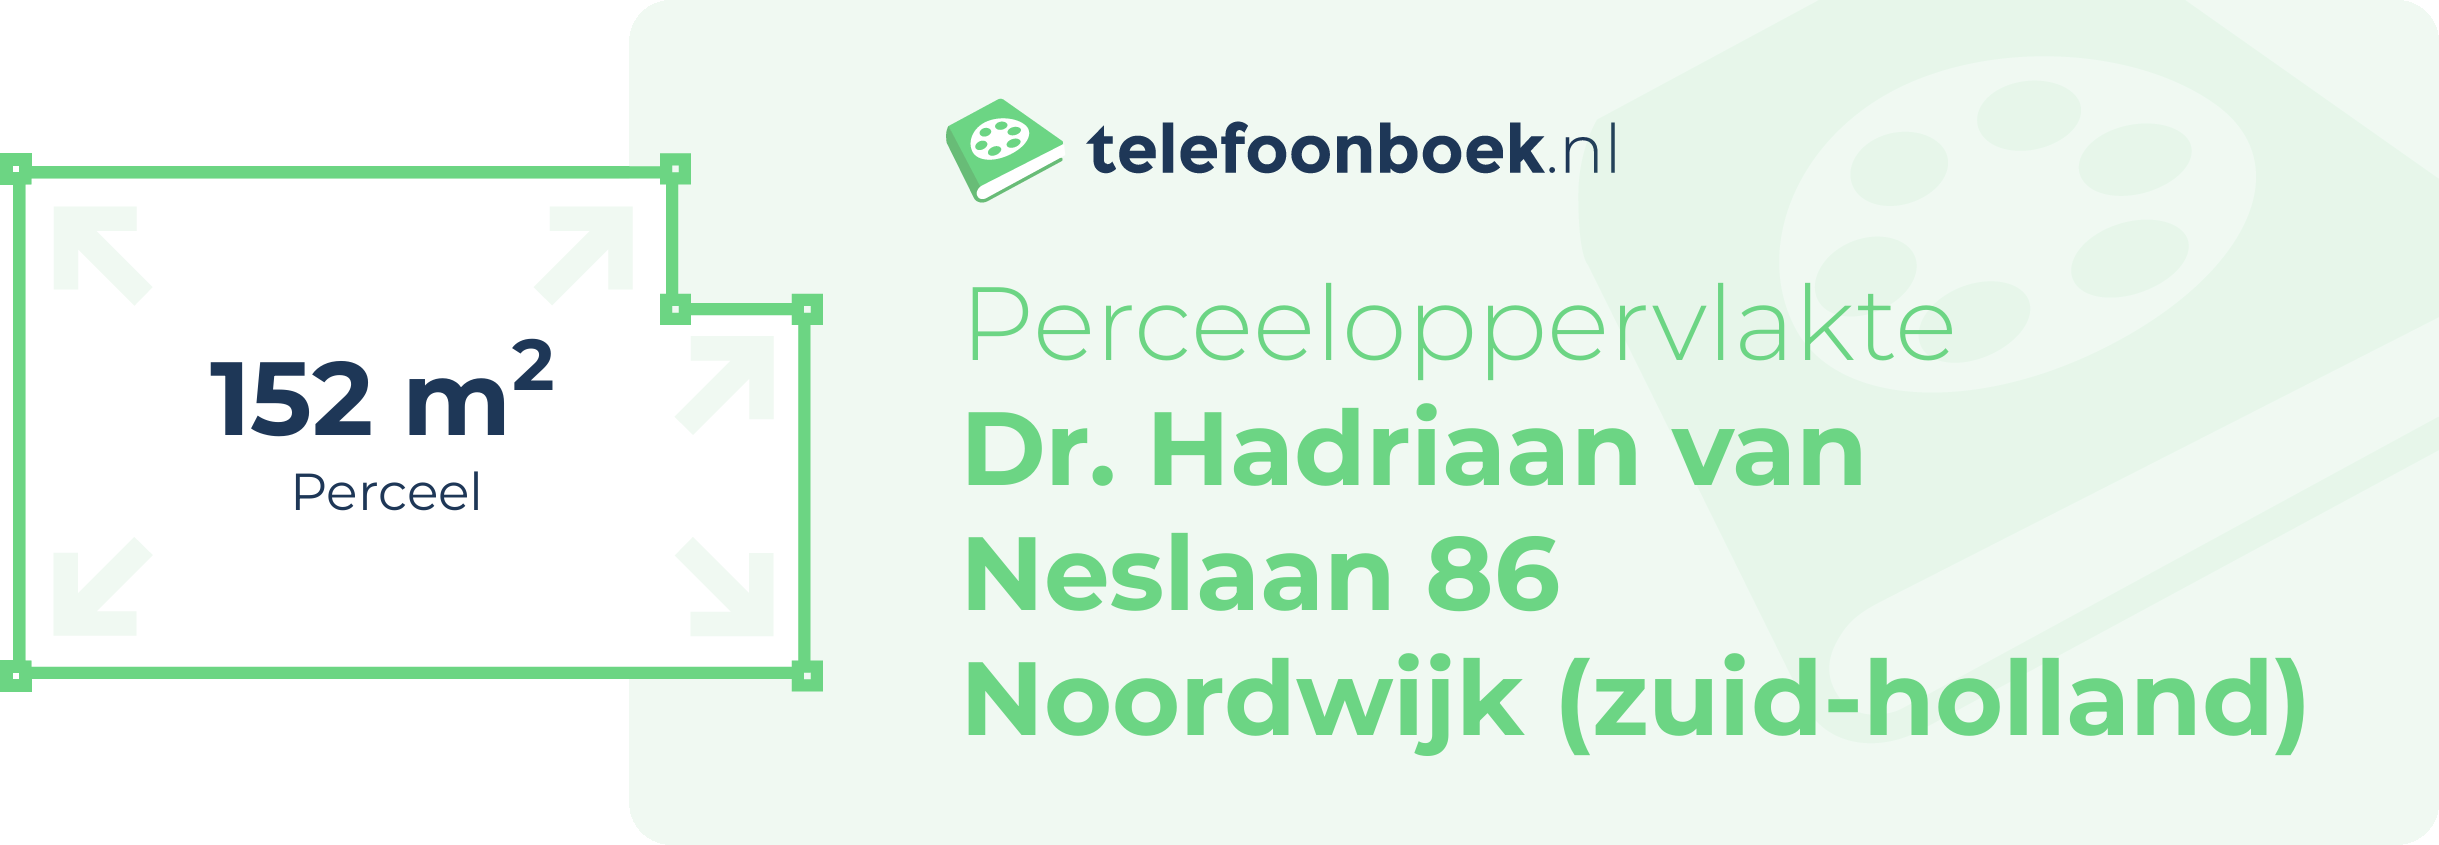 Perceeloppervlakte Dr. Hadriaan Van Neslaan 86 Noordwijk (Zuid-Holland)